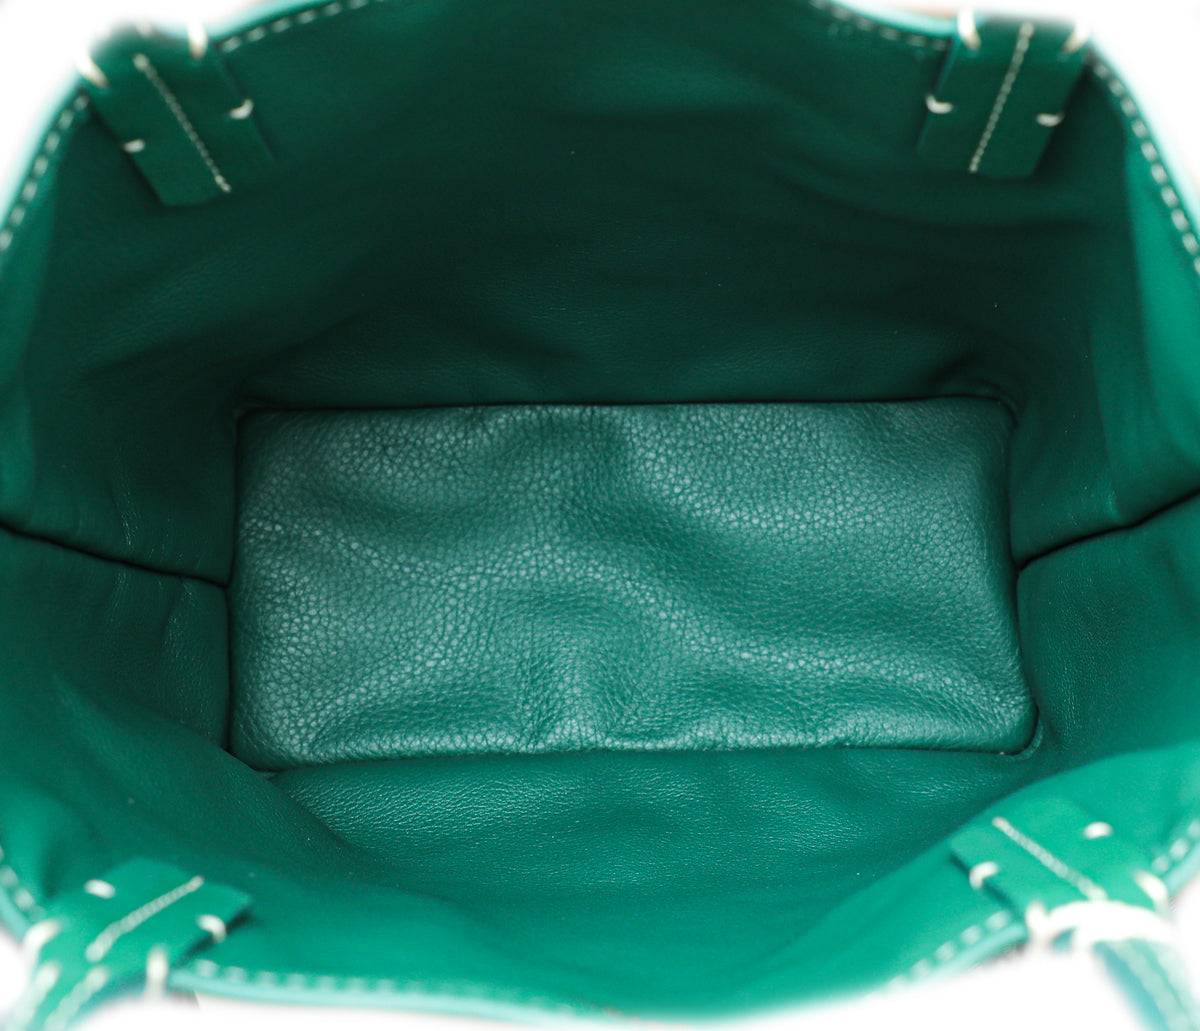 Goyard Green Anjou Mini Tote Bag Silver Hardware - BOPF